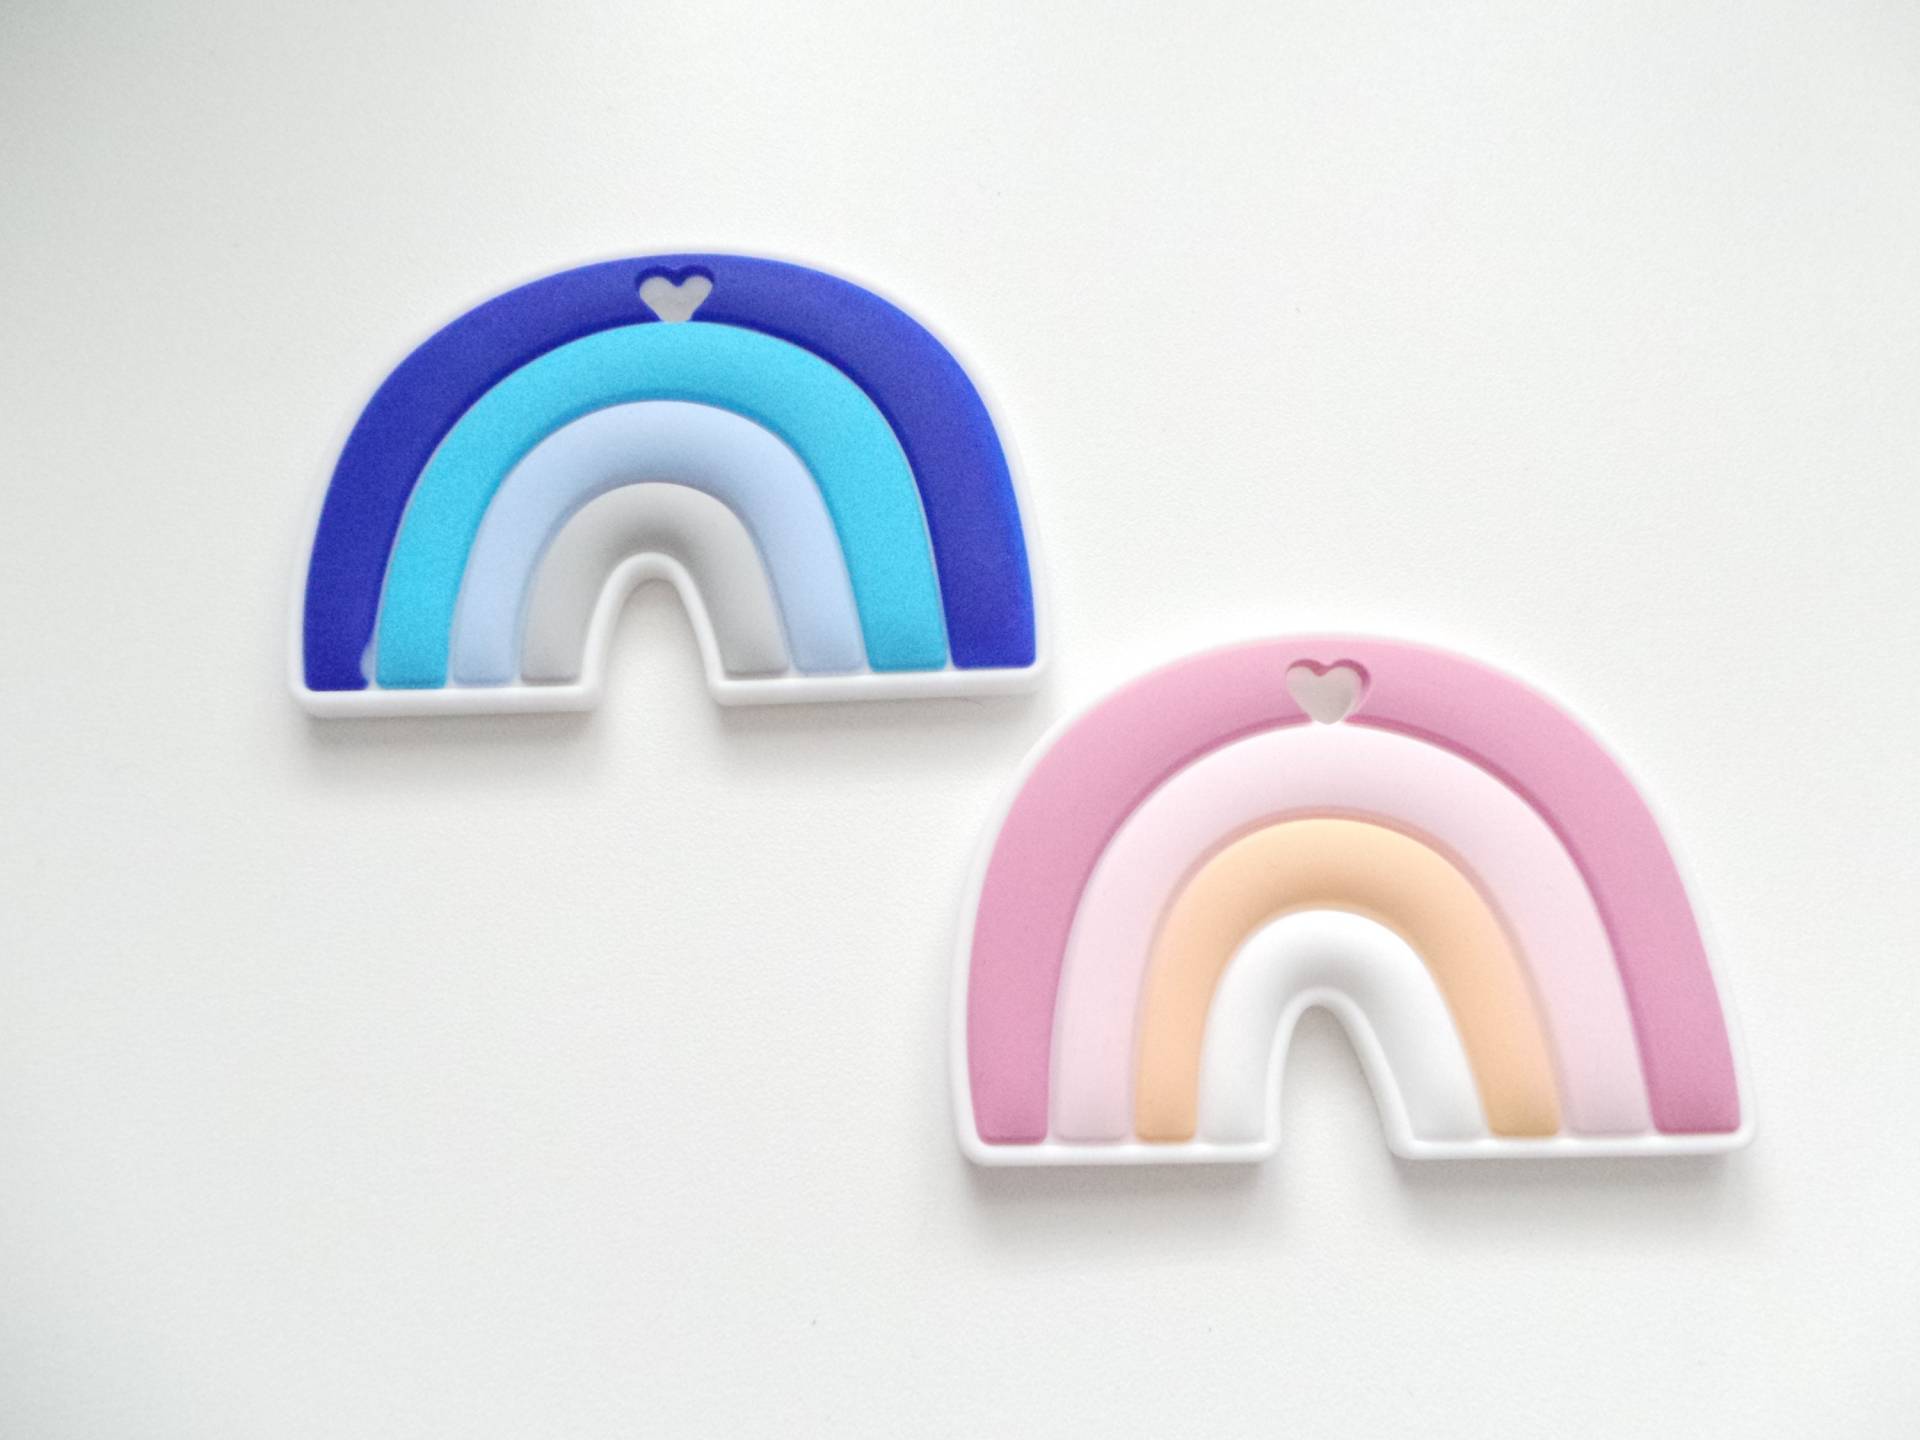 Regenbogen Beißer - Silikon Beiß Spielzeug Soother Toy von LittleDuckyuk